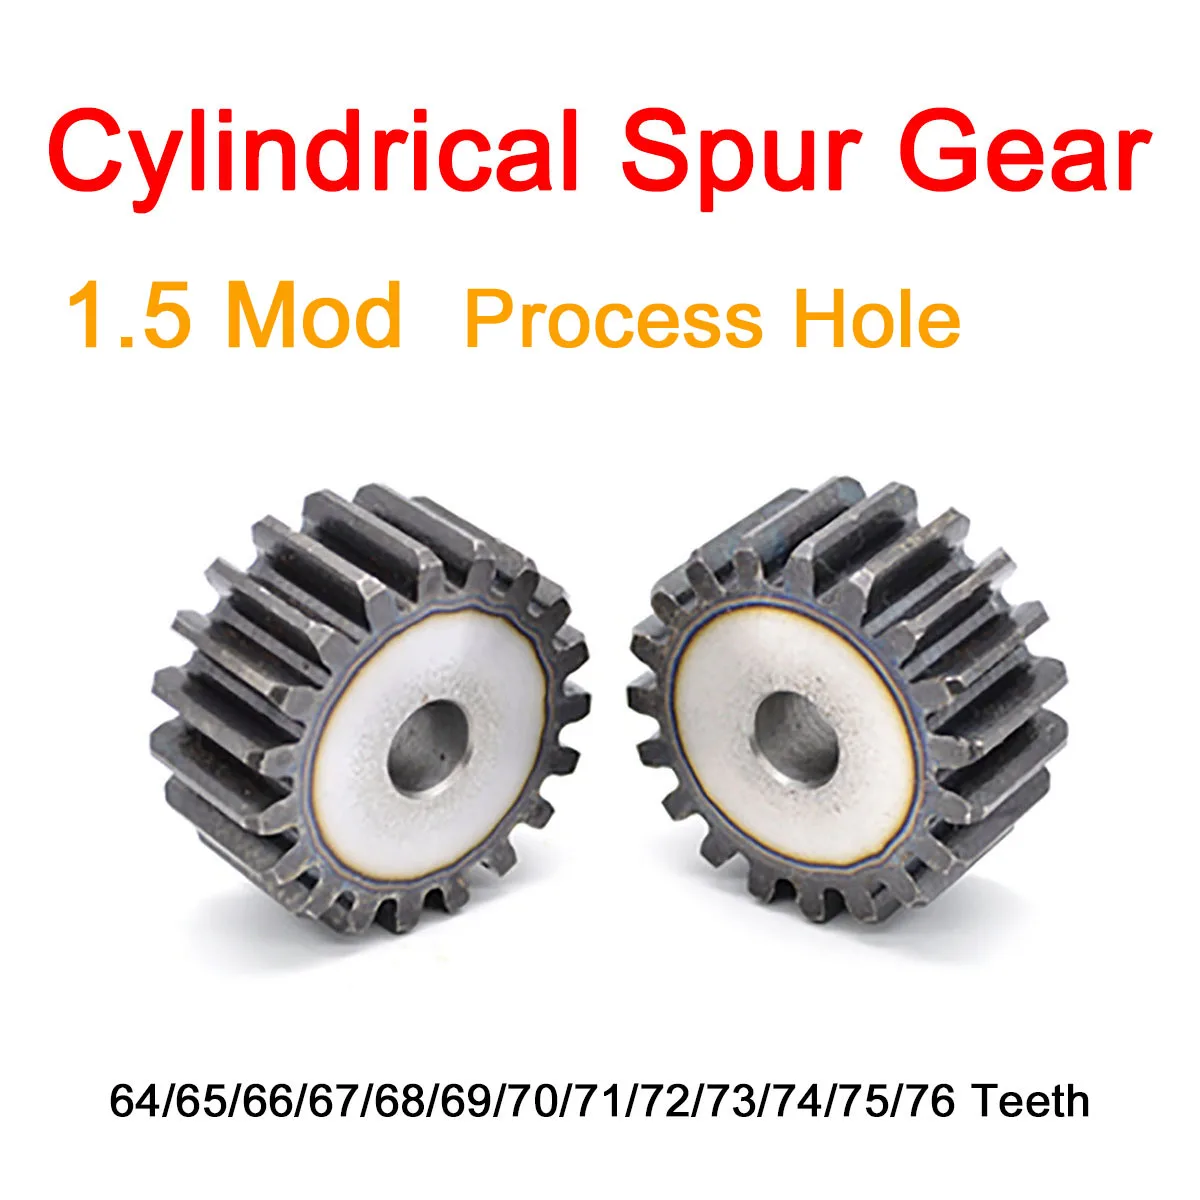 

1Pc 1.5Mod Cylindrical Spur Gear 64/65/66/67/68/69/70/71/72/73/74/75/76Teeth Teeth 45# Steel Transmission Gear Tooth Pitch4.71mm